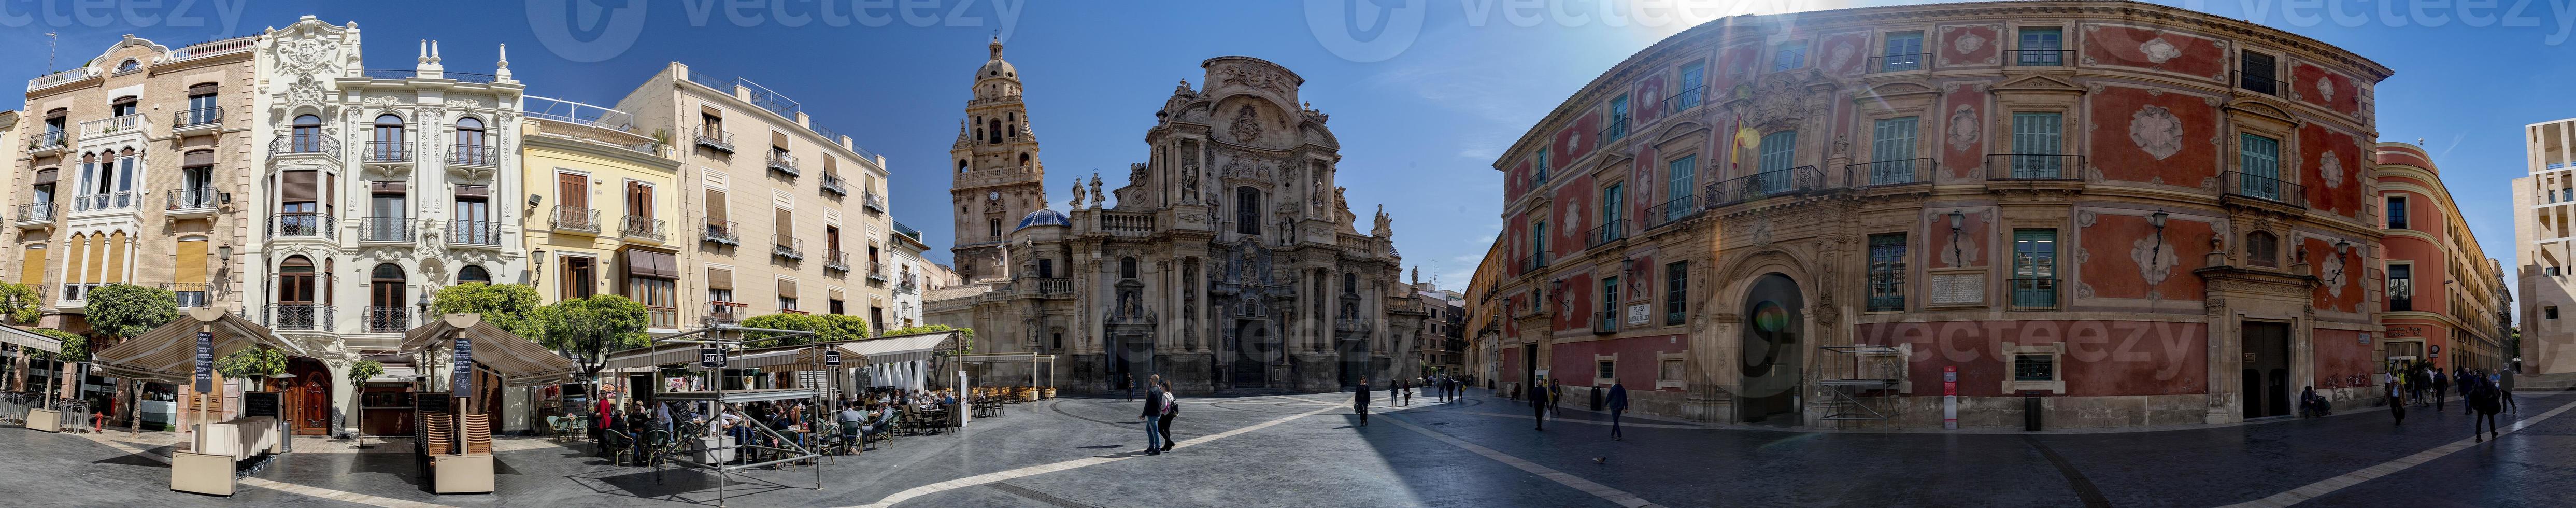 Murcia, Spanien - Mars 28 2019 - towm huvud plats med katedral och palats foto